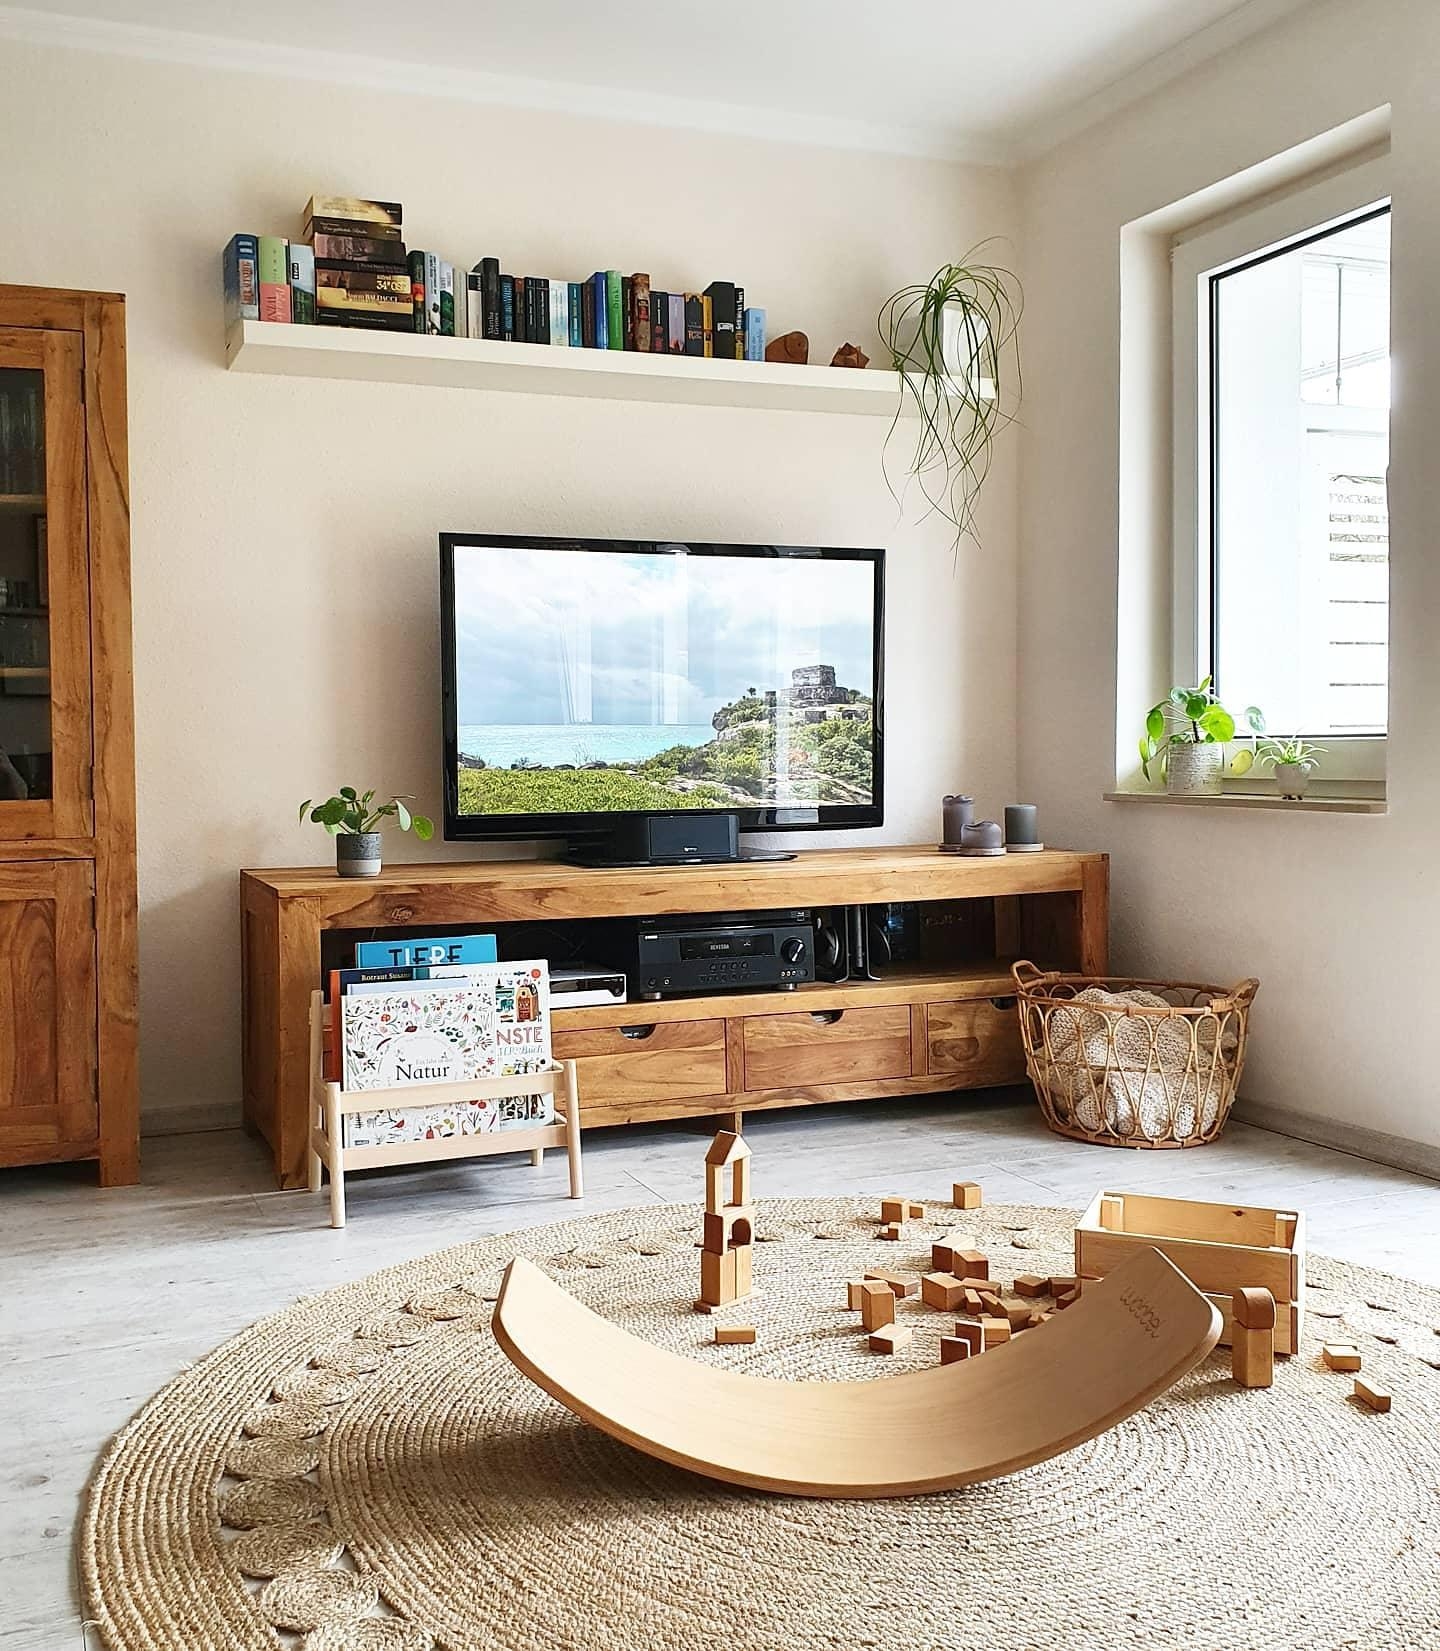 Heute mal ein ganz neuer Einblick in unser Wohnzimmer! #fernsehecke #livingroom 